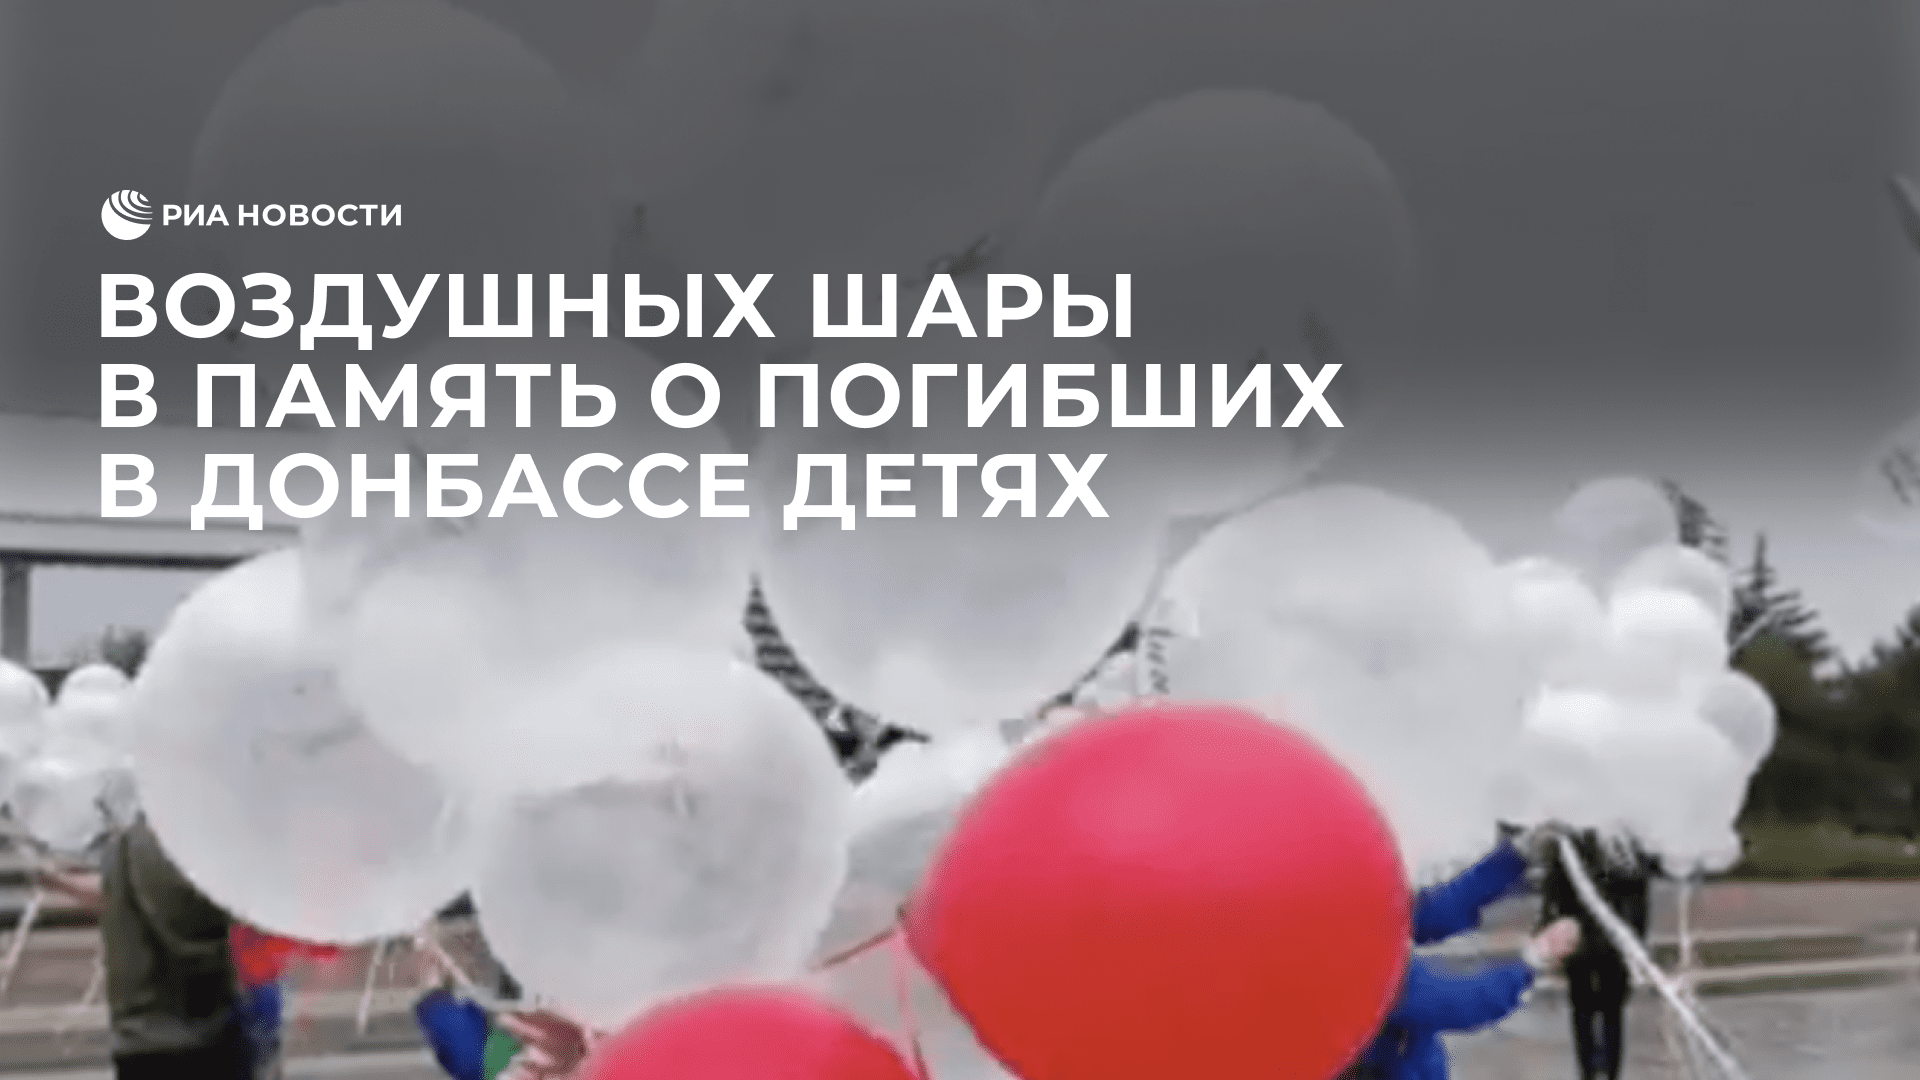 Воздушные шары запустили в Мариуполе в память о погибших в Донбассе детях